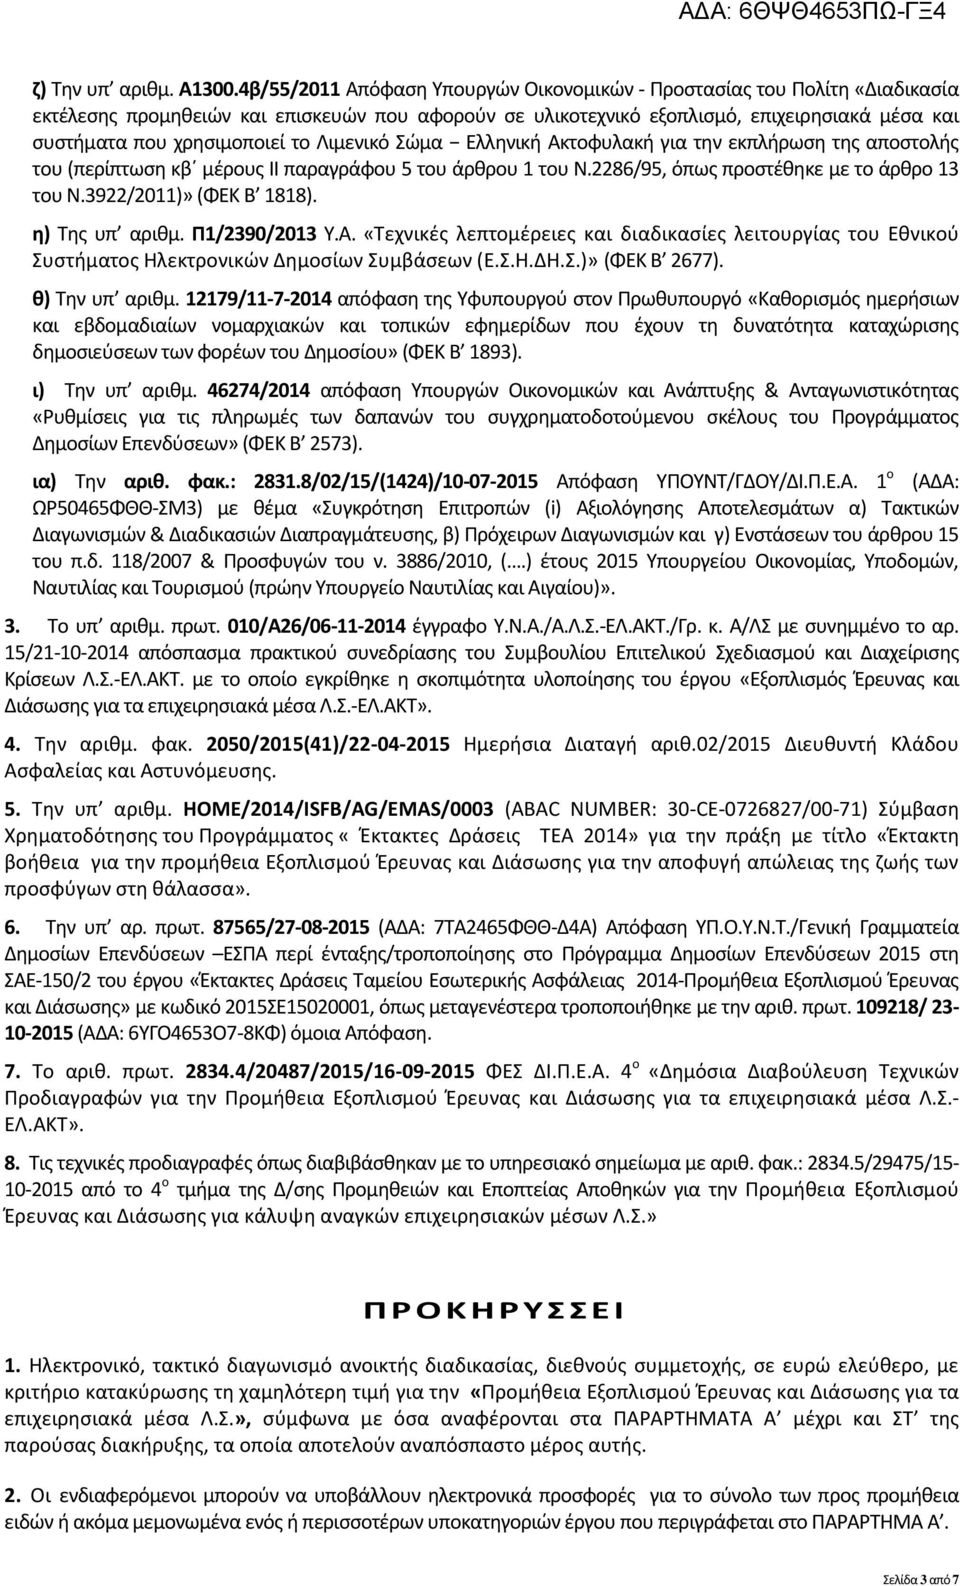 το Λιμενικό Σώμα Ελληνική Ακτοφυλακή για την εκπλήρωση της αποστολής του (περίπτωση κβ μέρους ΙΙ παραγράφου 5 του άρθρου 1 του Ν.2286/95, όπως προστέθηκε με το άρθρο 13 του Ν.3922/2011)» (ΦΕΚ Β 1818).